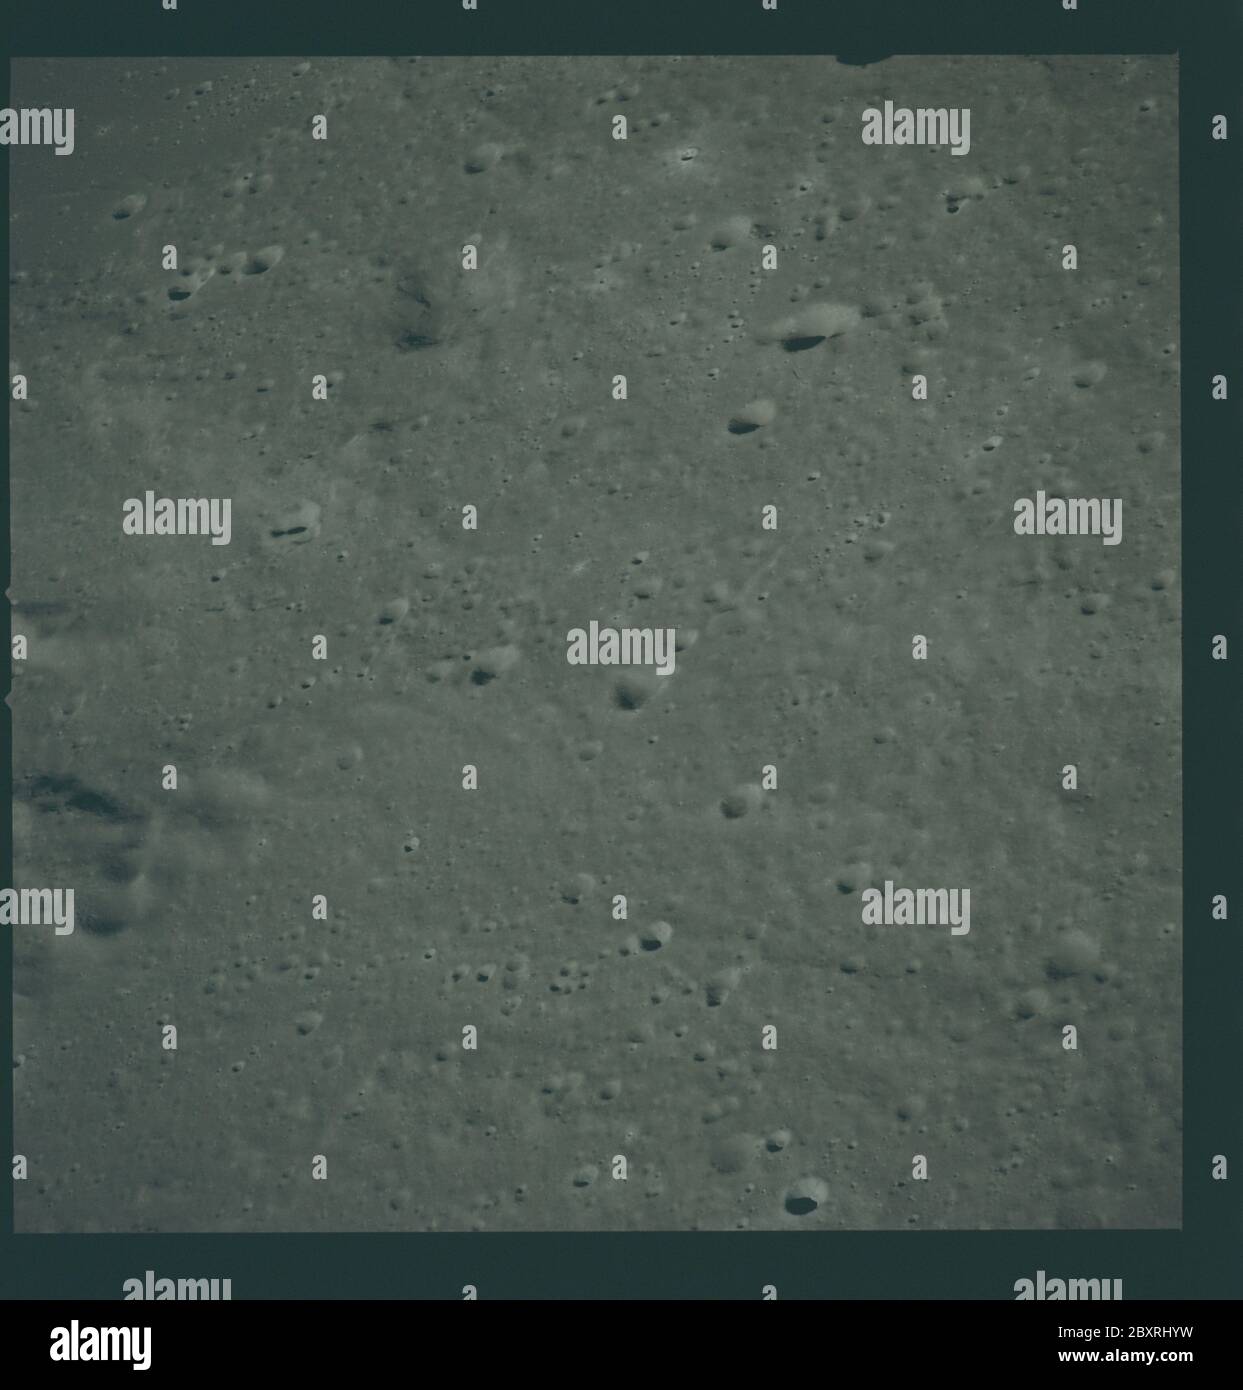 AS14-73-10118 - Apollo 14 - Apollo 14 immagine della missione - Vista del bordo nordorientale del Mare conosciuto.; scopo e contenuto: Il database originale descrive questo come: Descrizione: Vista del bordo nordorientale del Mare conosciuto (Mare Cognitum). Le immagini sono state scattate durante la Rivoluzione 26 della missione Apollo 14. Il caricatore di pellicola originale era etichettato M, il tipo di pellicola era S0-368 (Ektachrome MS, inversione di colore), lente da 250 mm con un'elevazione del sole di 22 gradi. La scala approssimativa della foto è 1:469,000. La latitudine del punto principale era di 7.0S per la longitudine 18.5W, con un'inclinazione della telecamera di 20 gradi e un azimuth di 255 gradi. Ter. Oggetto Foto Stock